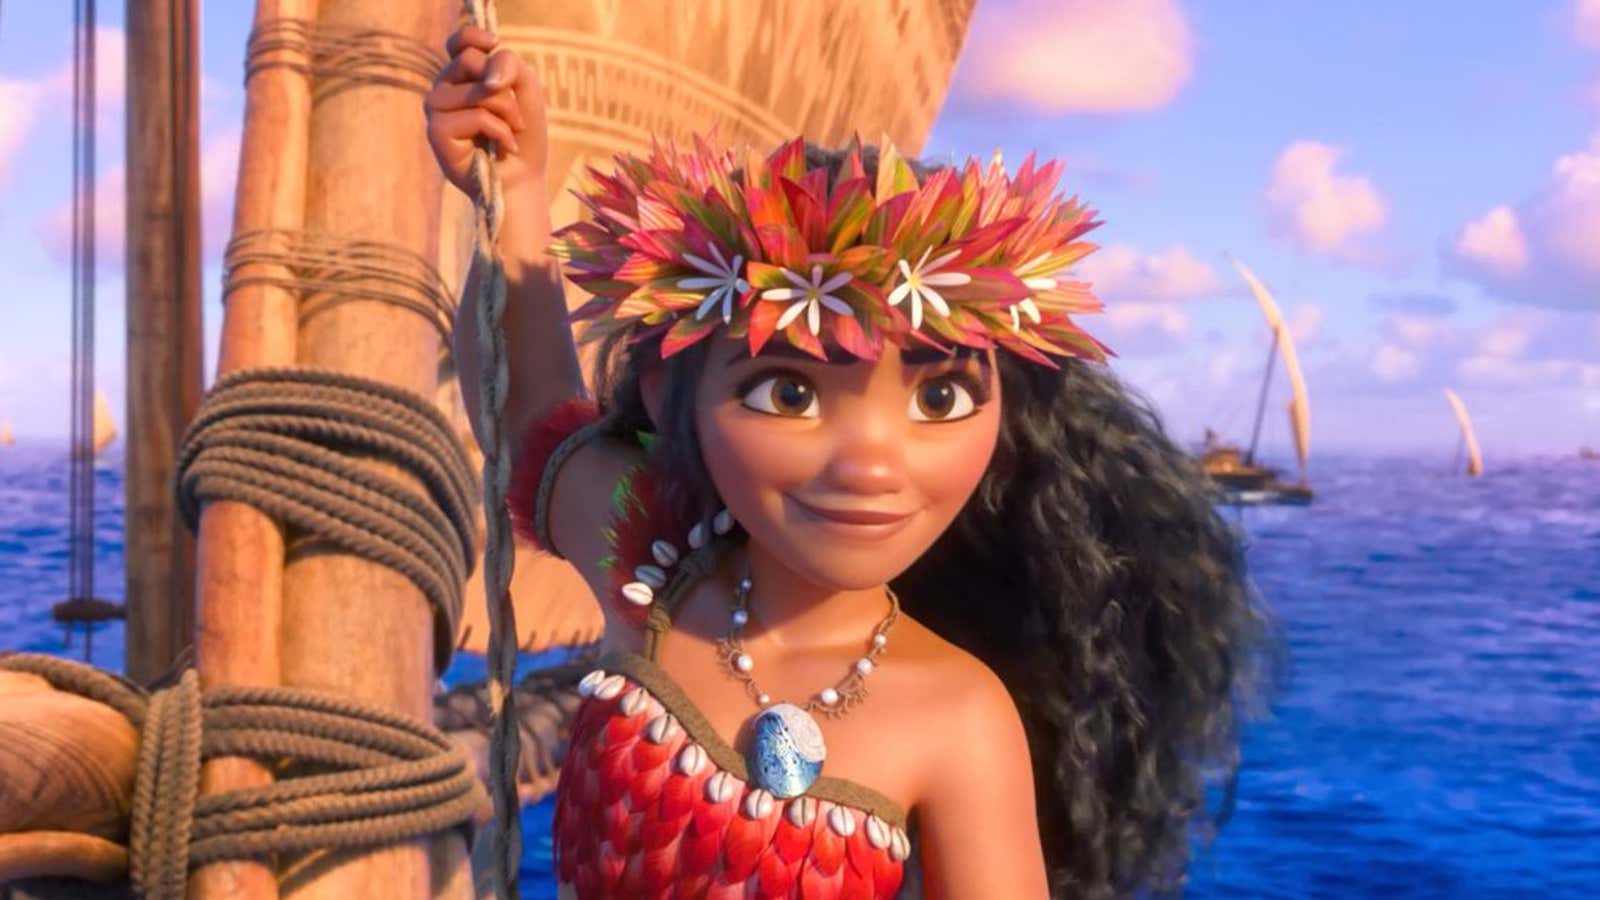 The Ocean Chose Me - Maui Moana Disney Movie Character Maui and